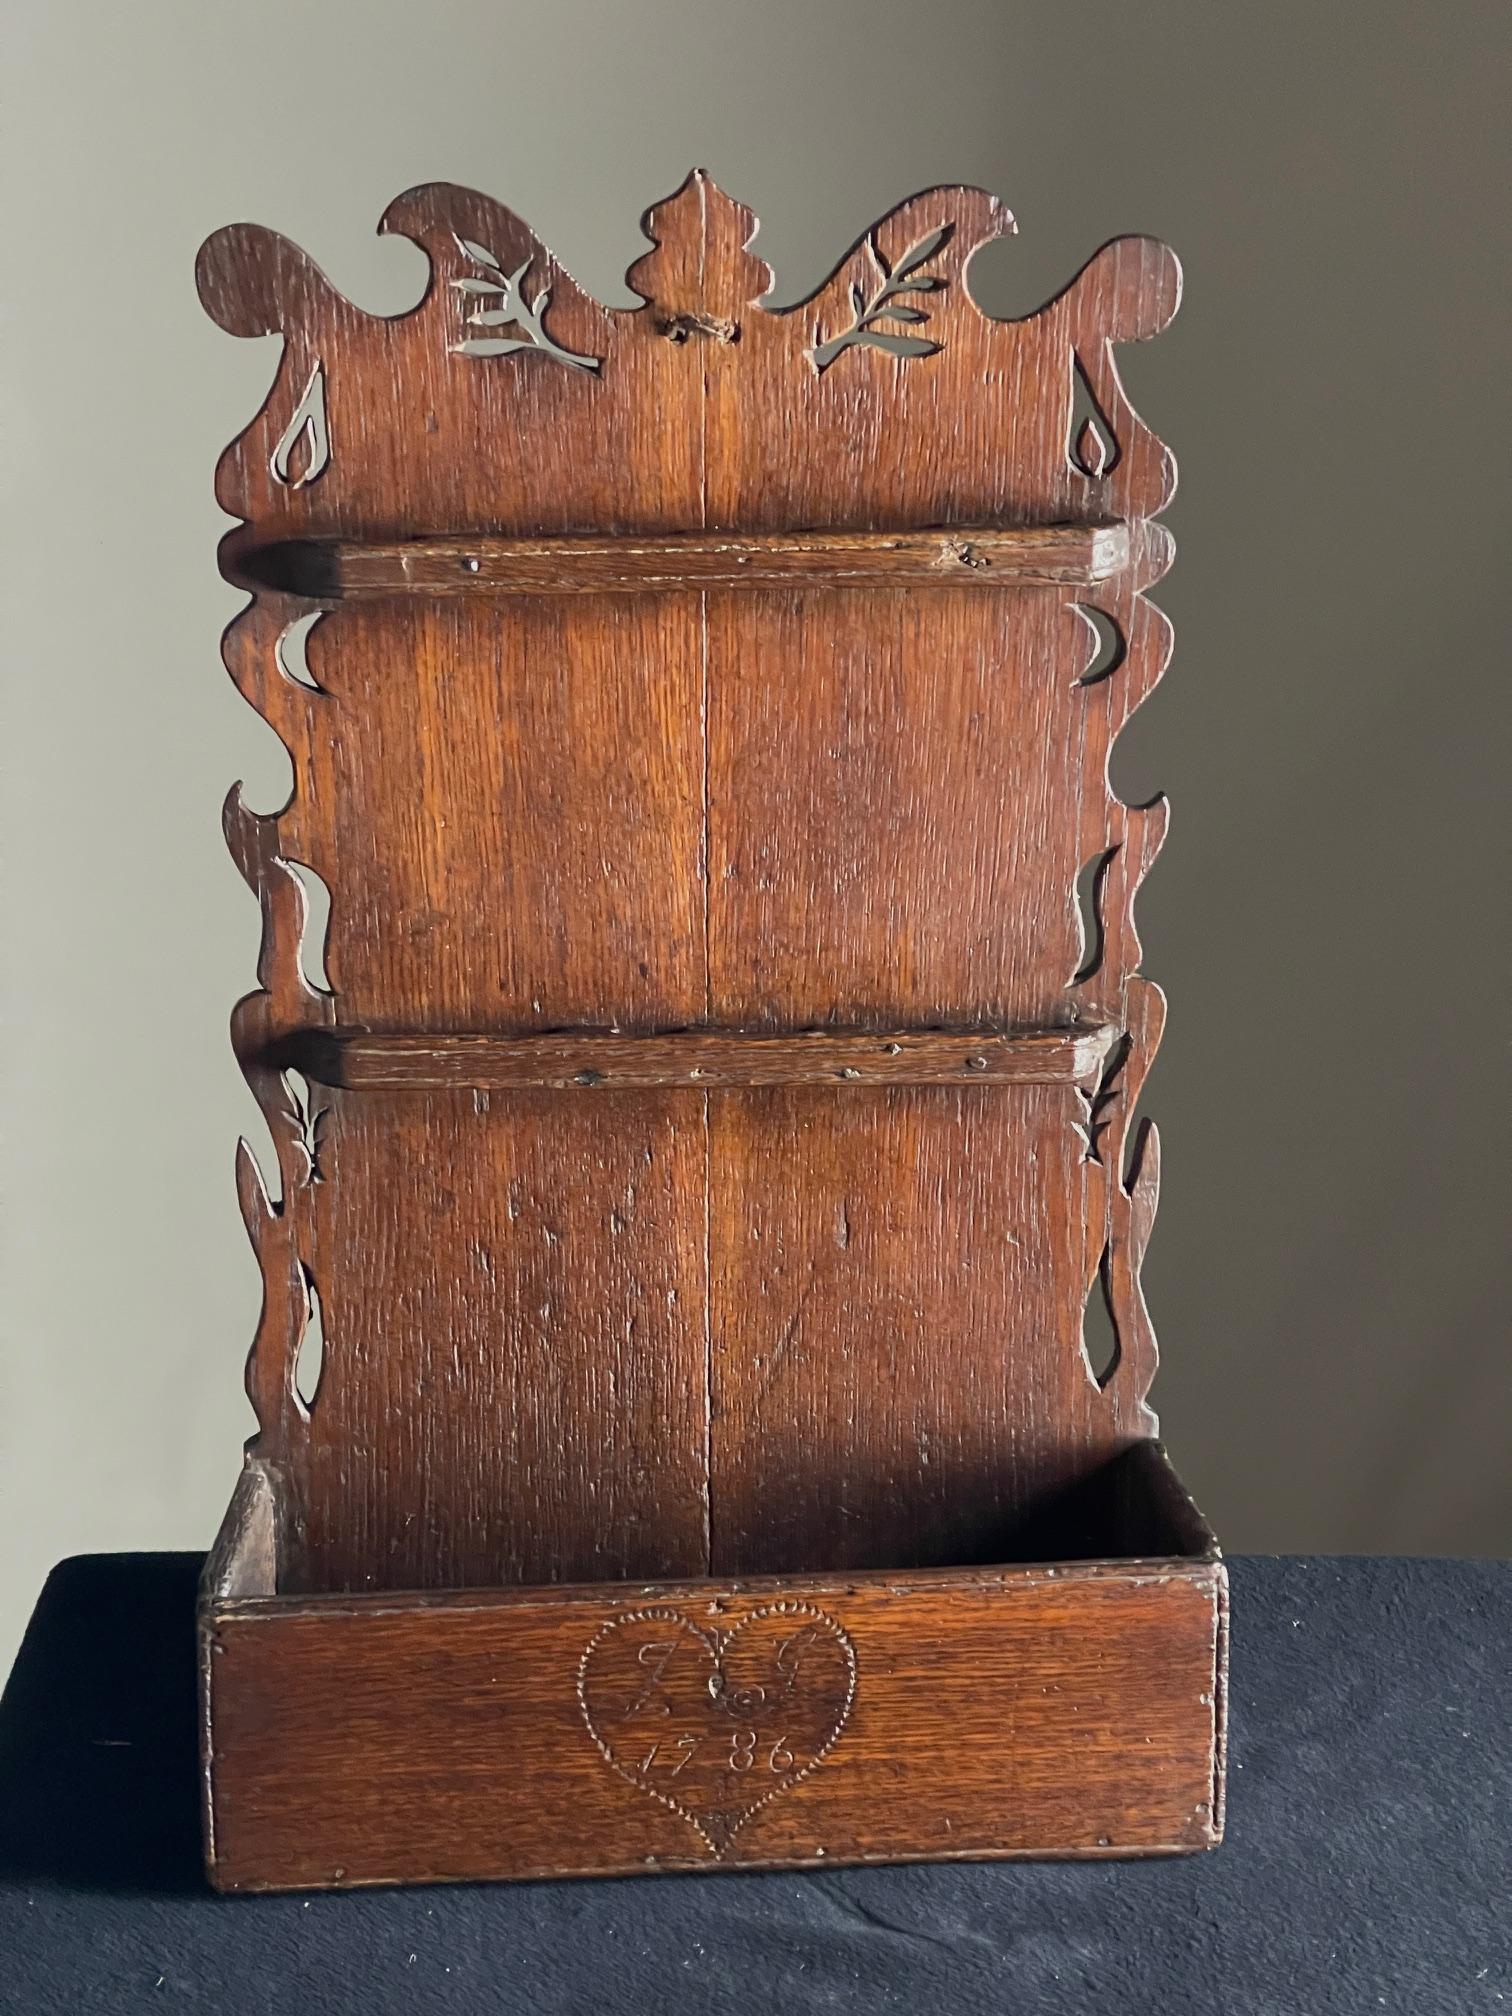 Porte-cuillères en Oak du 18e siècle

Porte-cuillère en chêne datant de 1786, avec des côtés façonnés et des perçages intéressants.

Dimensions 64 cm de haut 38 cm de large 14 cm de profondeur